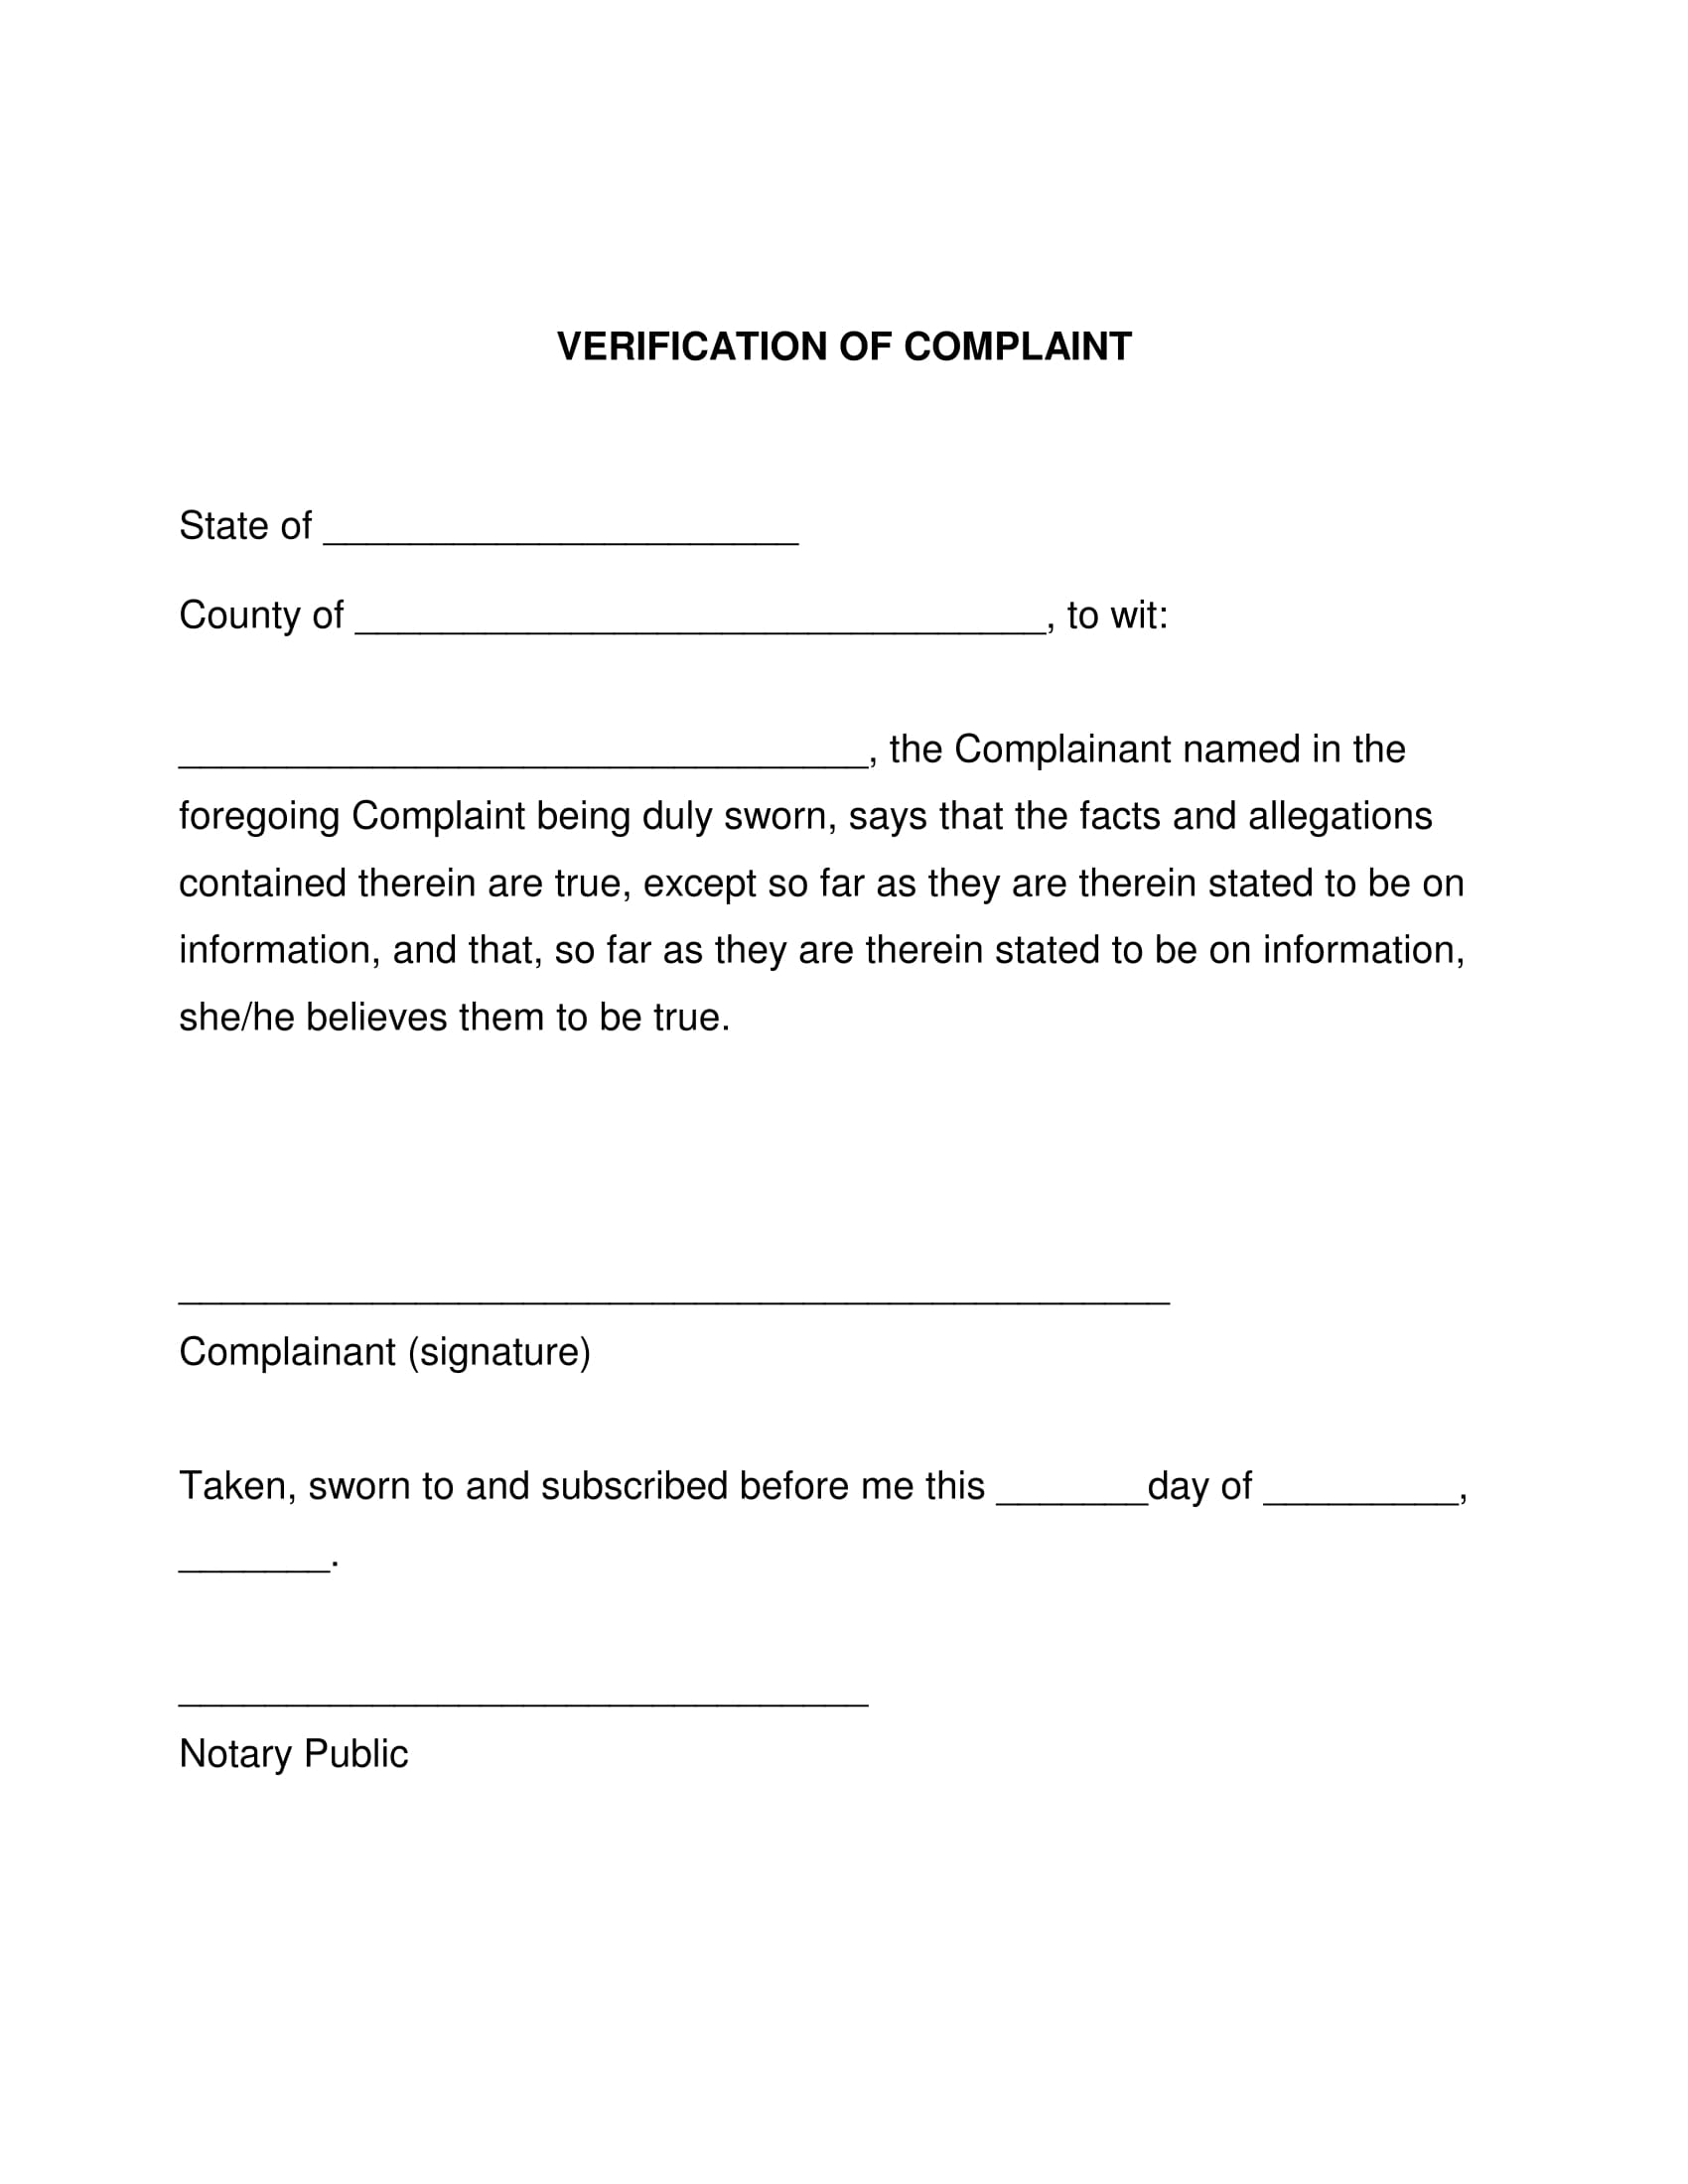 complaint verification form example 1